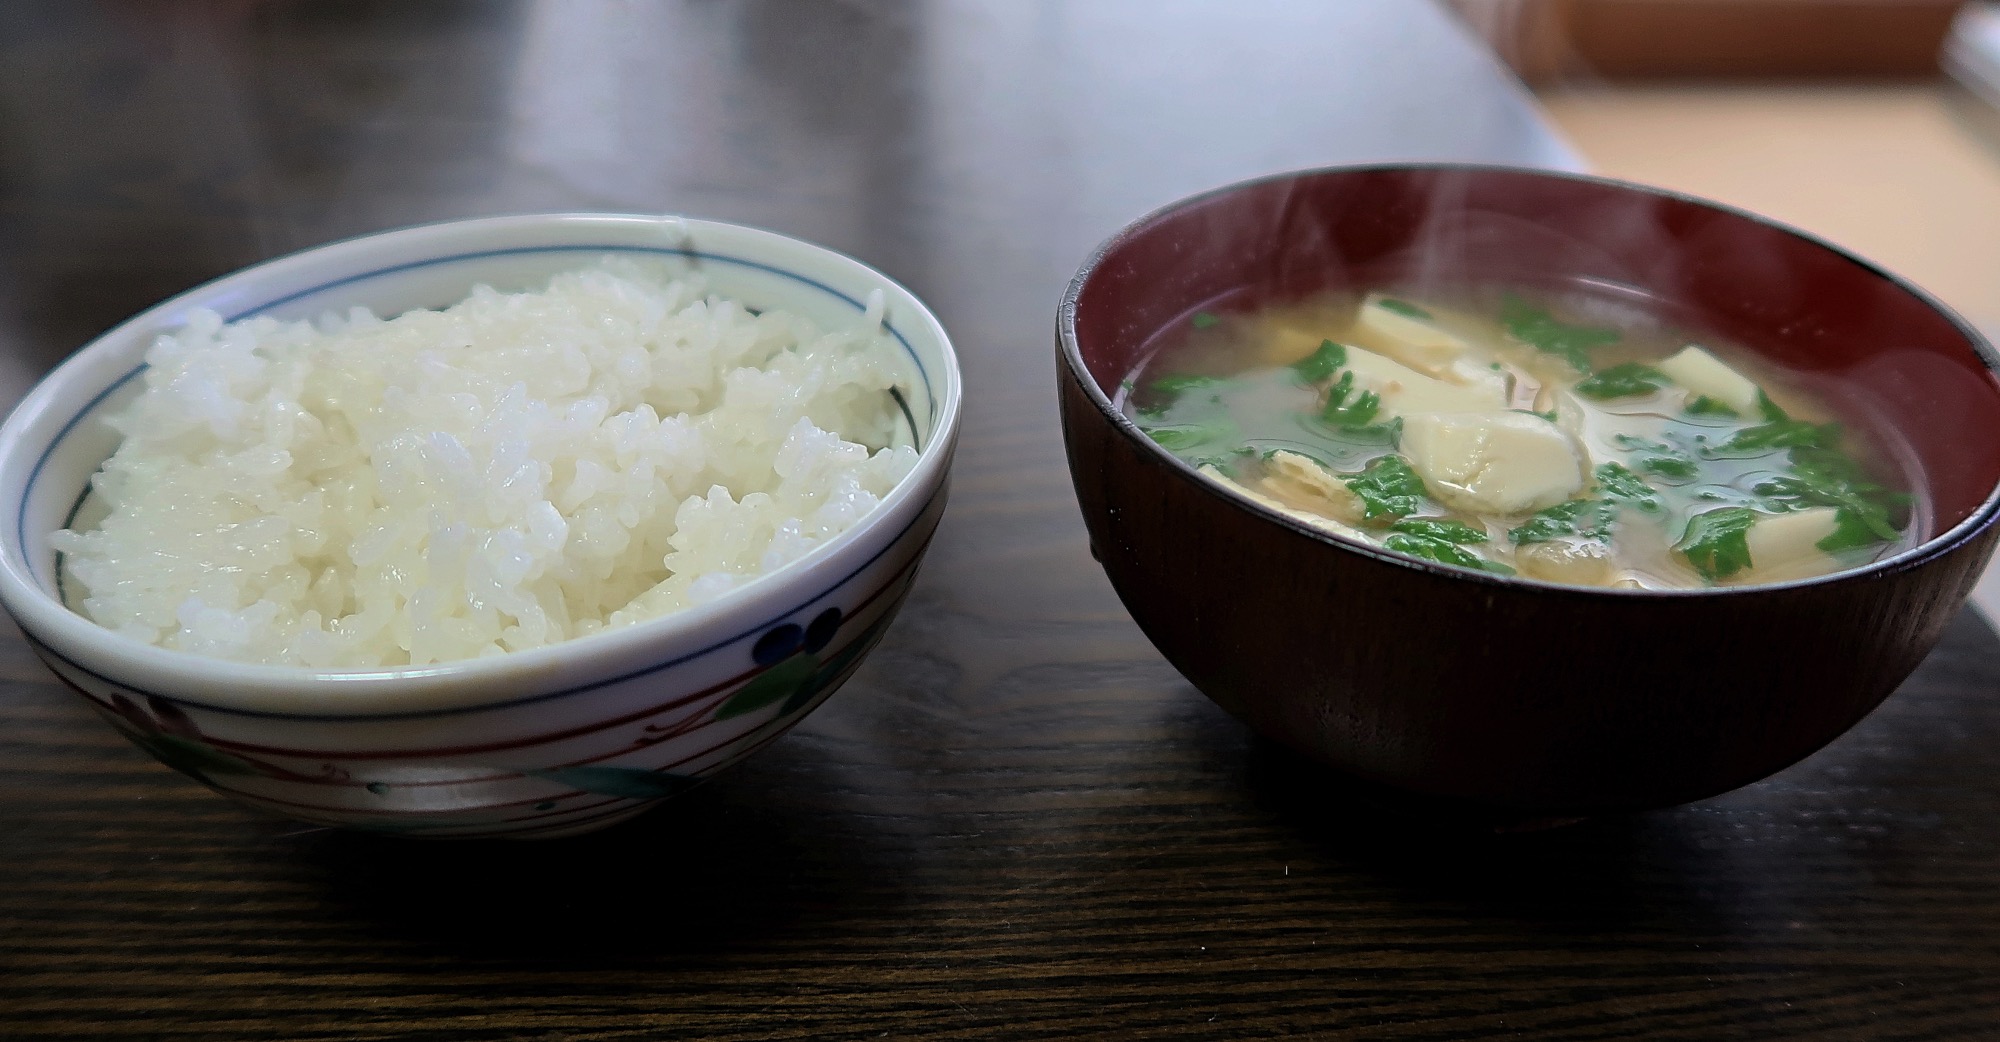 Japanische Esskultur: Eine Schale Reis und eine Miso-Suppe.